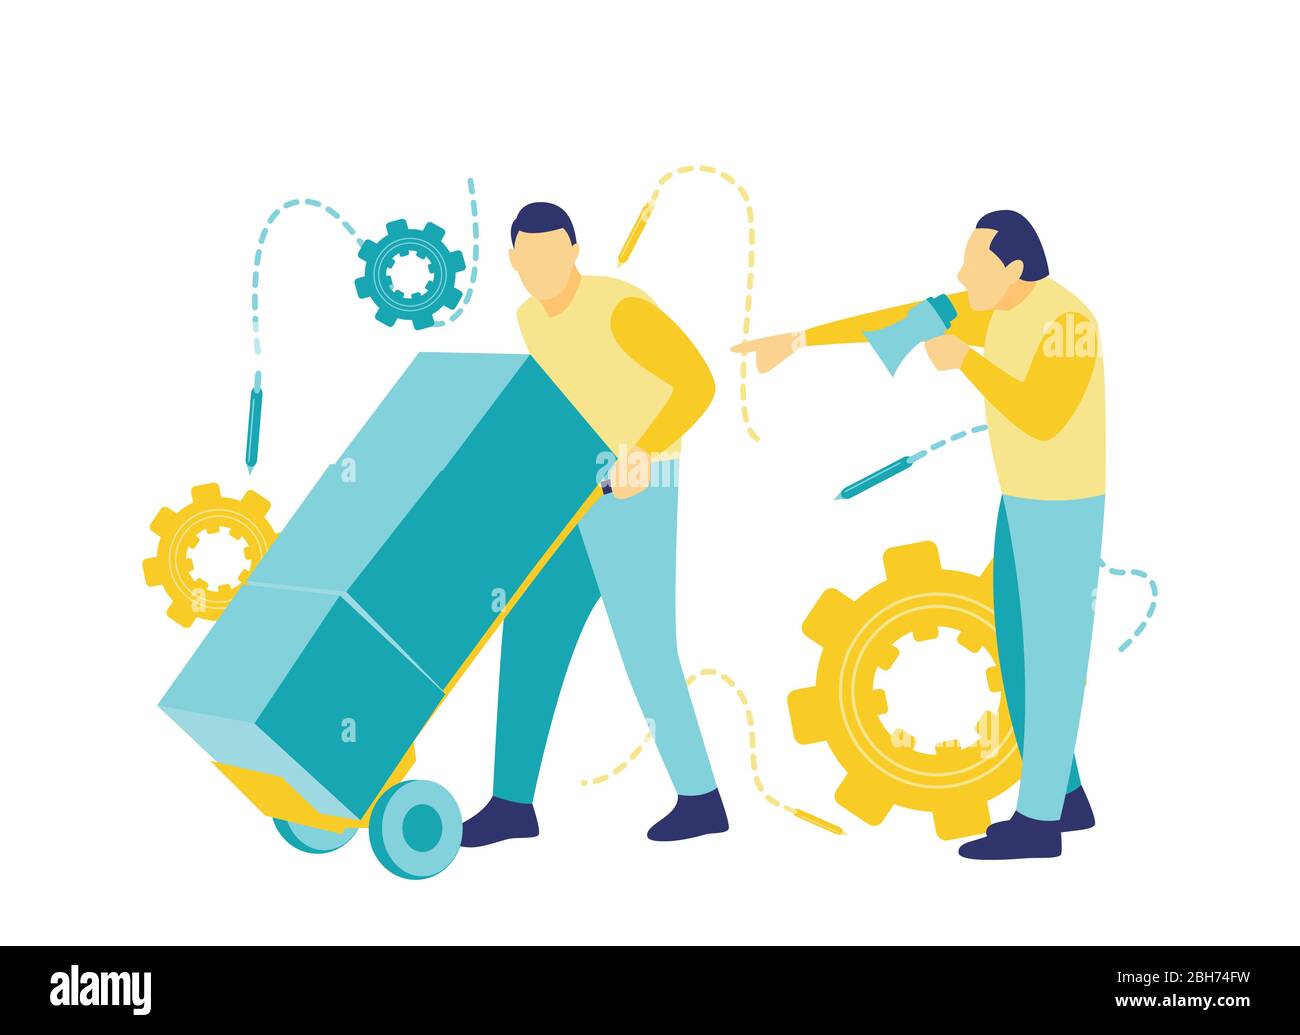 Illustration eines Chefs, der Arbeiter anschreit, die Lautsprecher verwenden, um schneller und effizienter in einem flachen blau-gelben Stil zu arbeiten. Stock Vektor